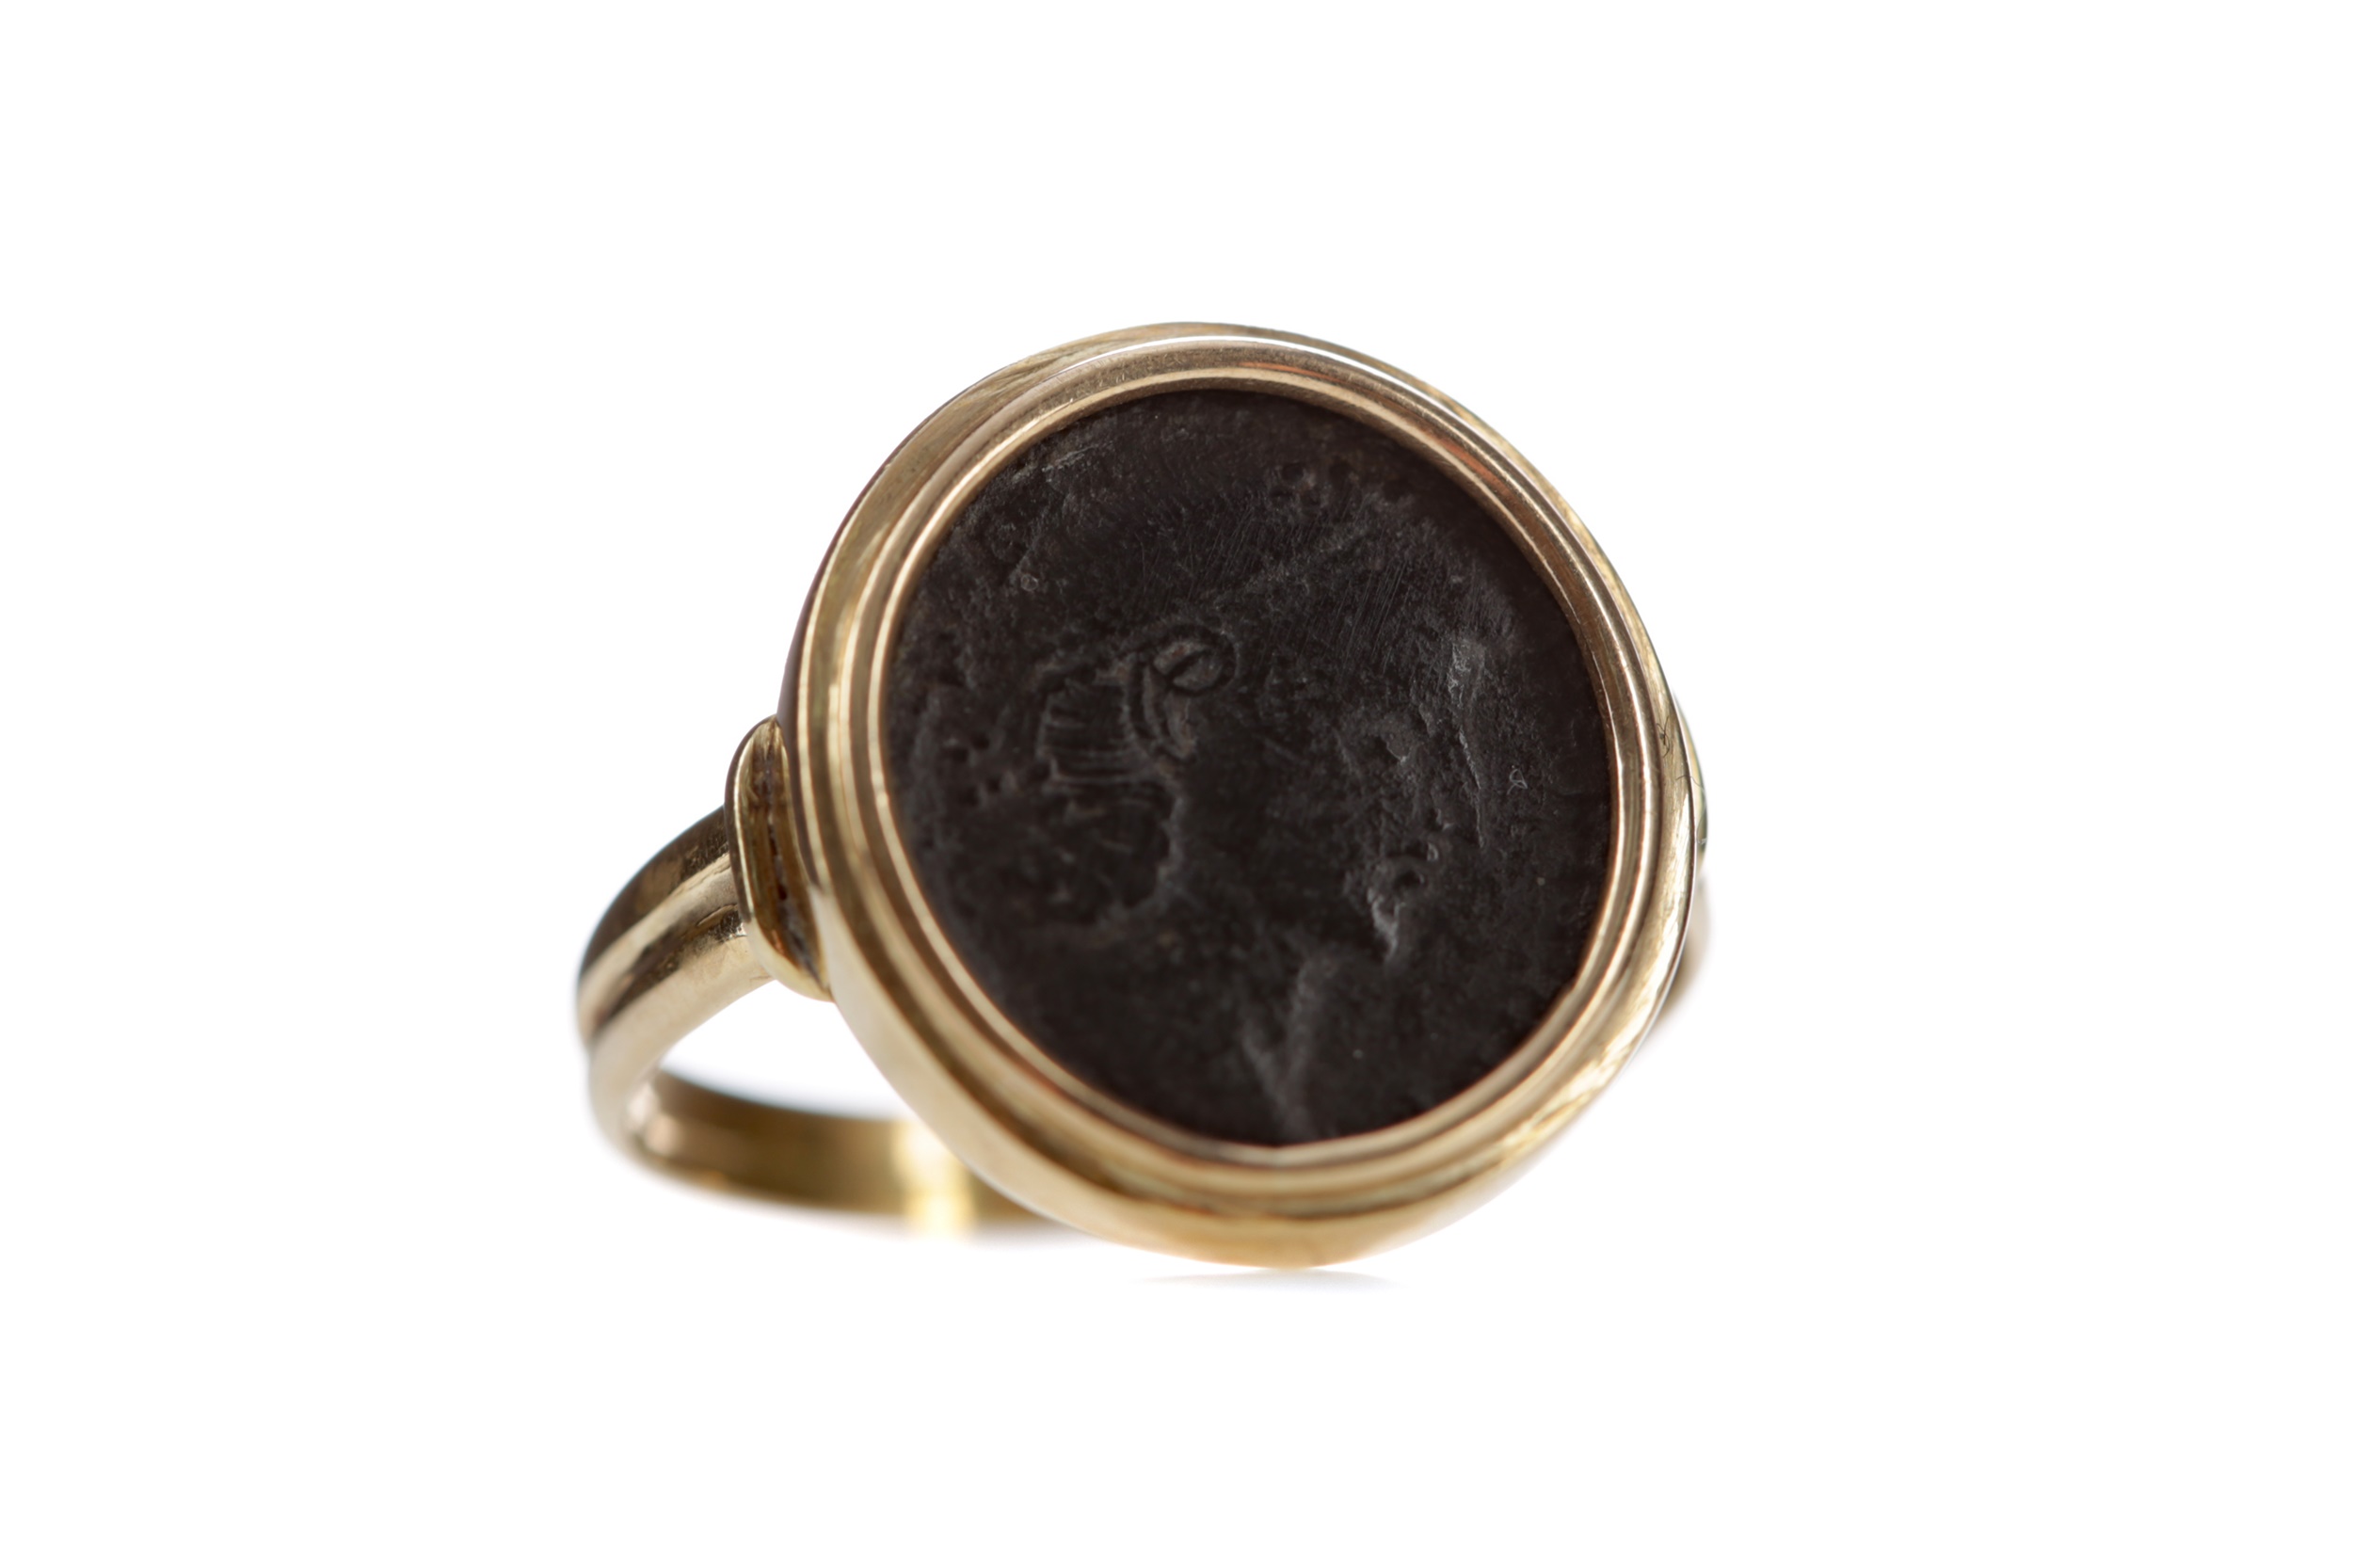 A ROMAN COIN RING